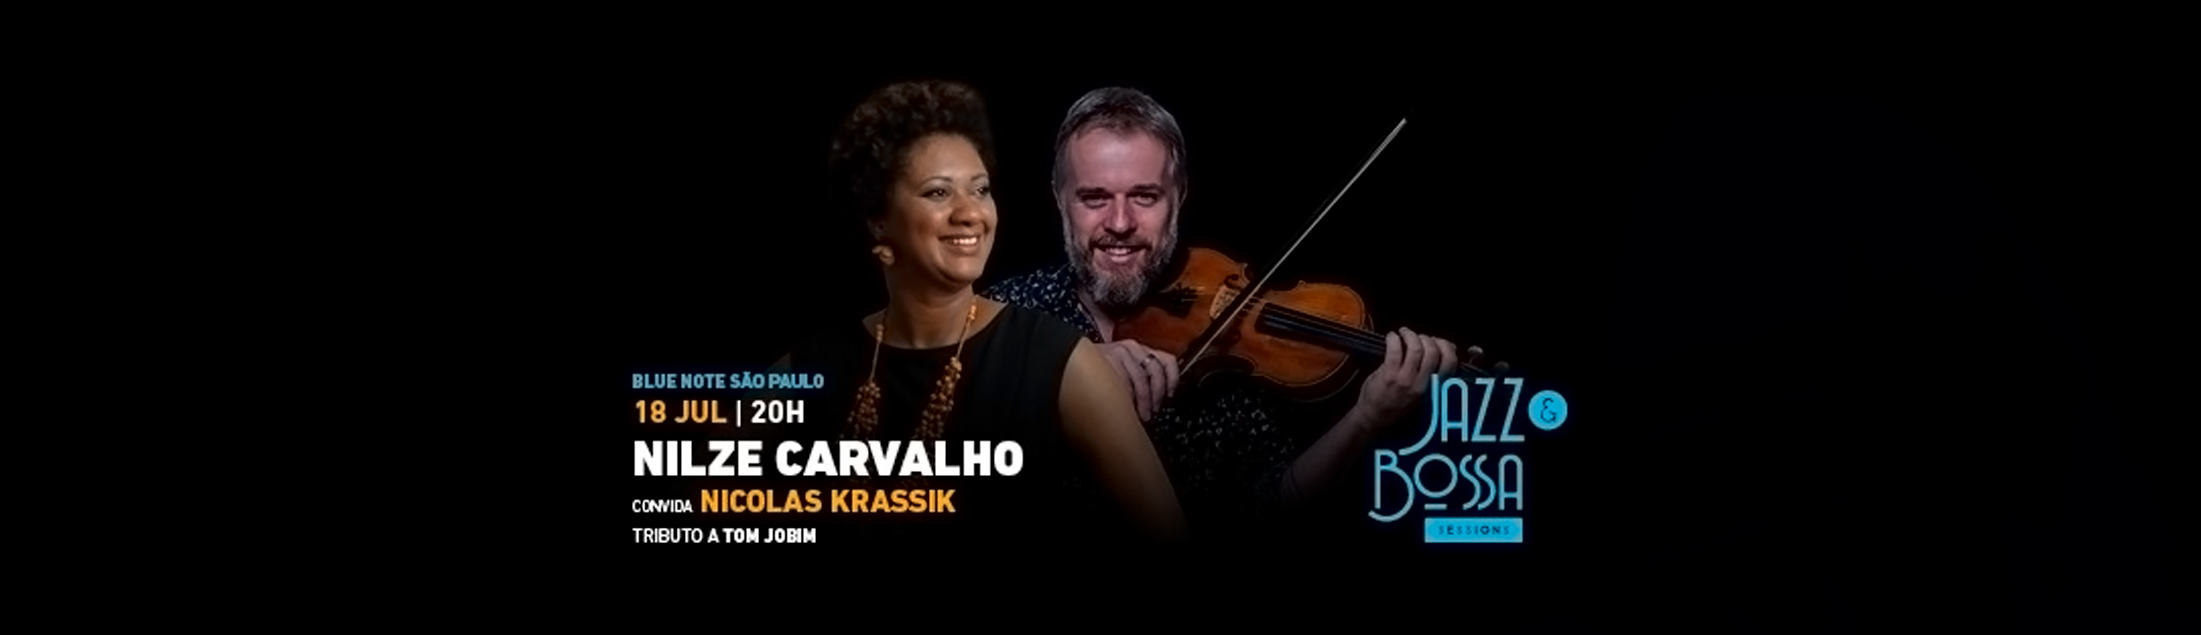 Nilze Carvalho convida Nicolas Krassik para o show 